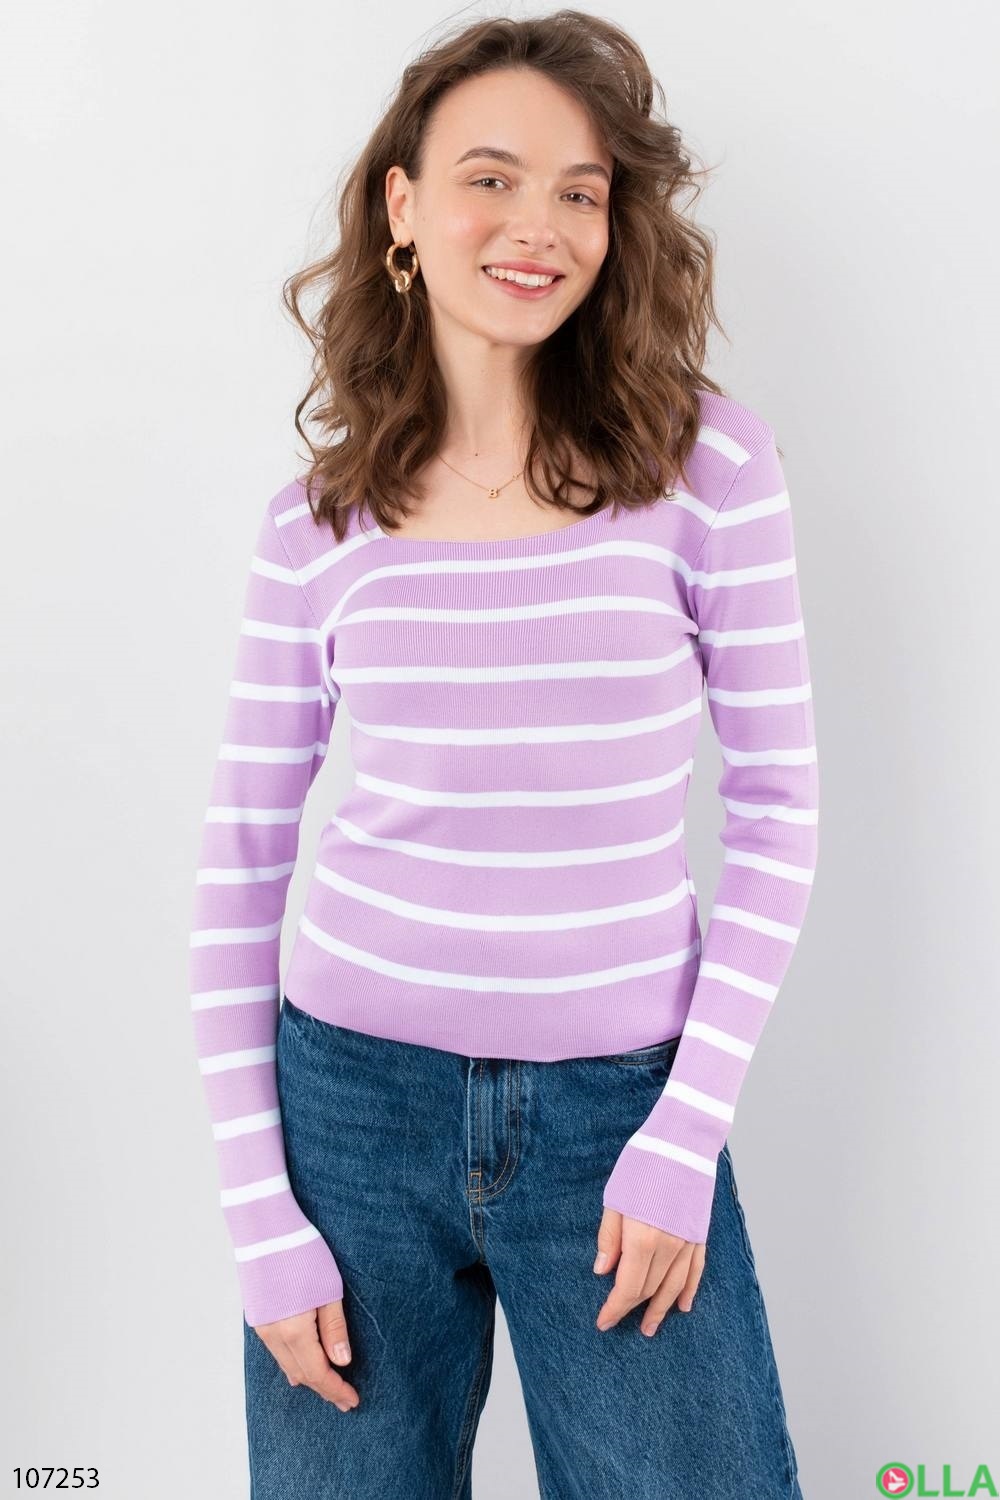 Женский лиловый свитер в полоску